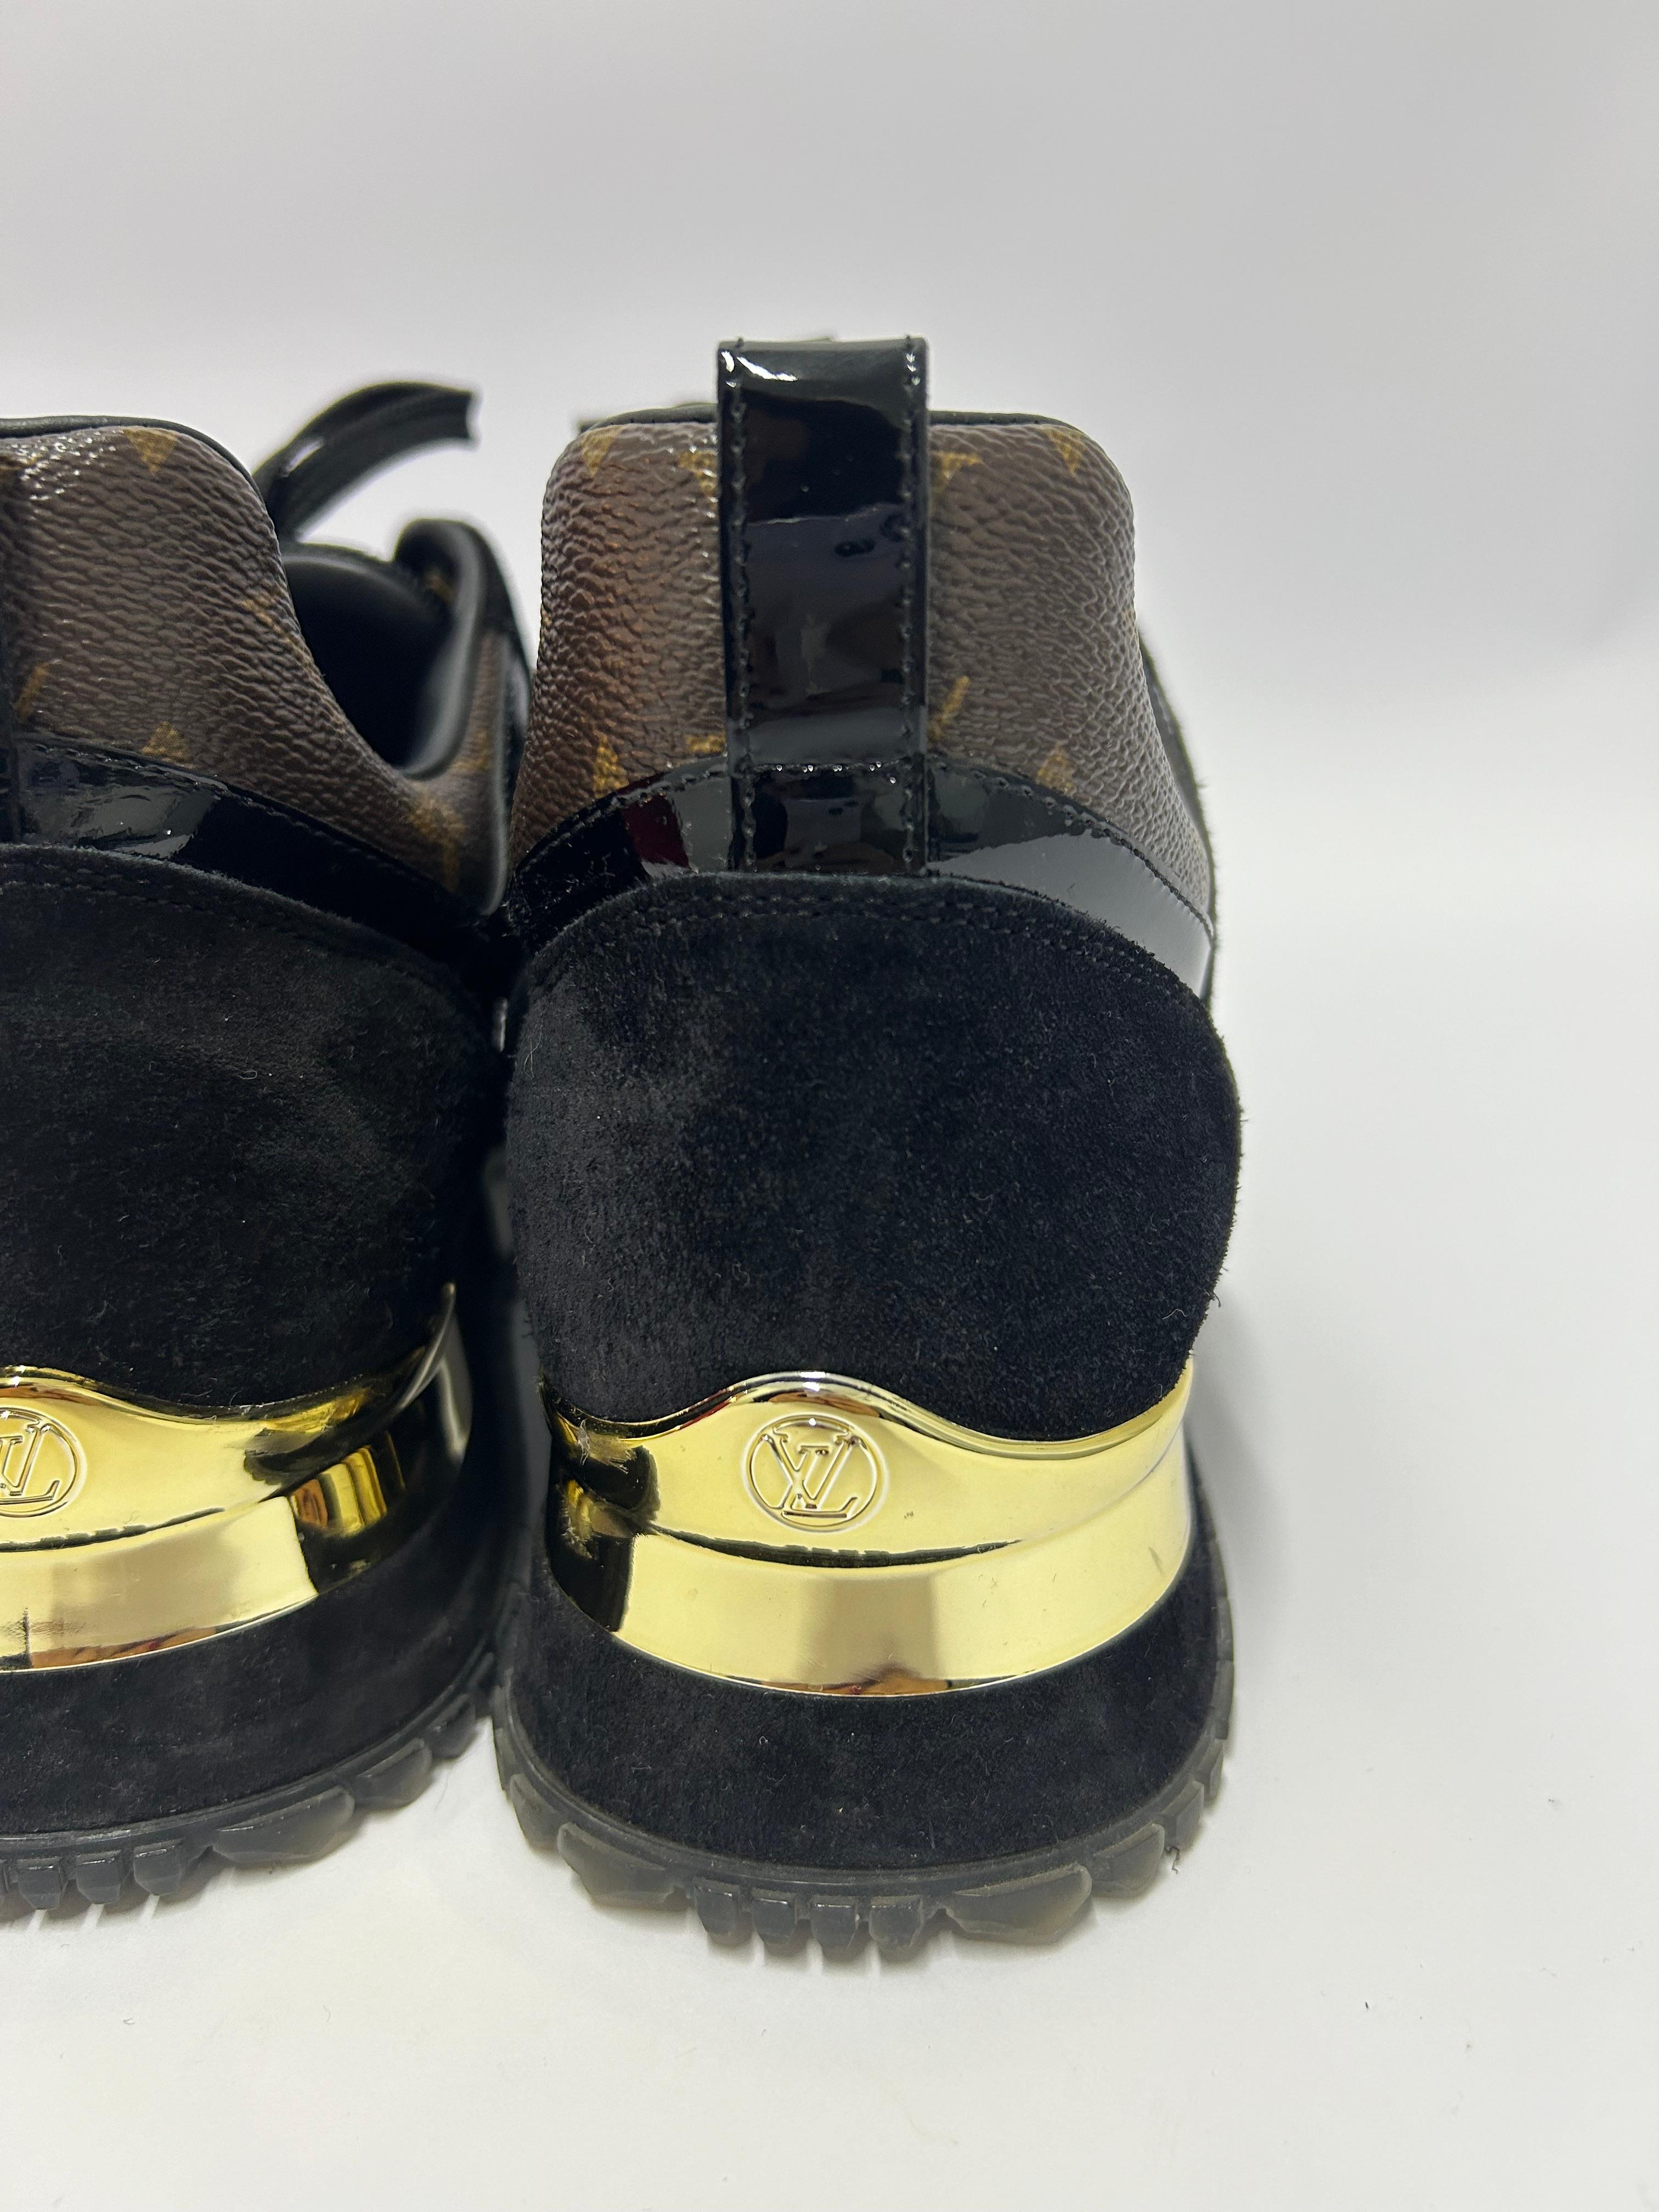 Louis Vuitton Run Away Sneakers Size EU 39 For Sale 6